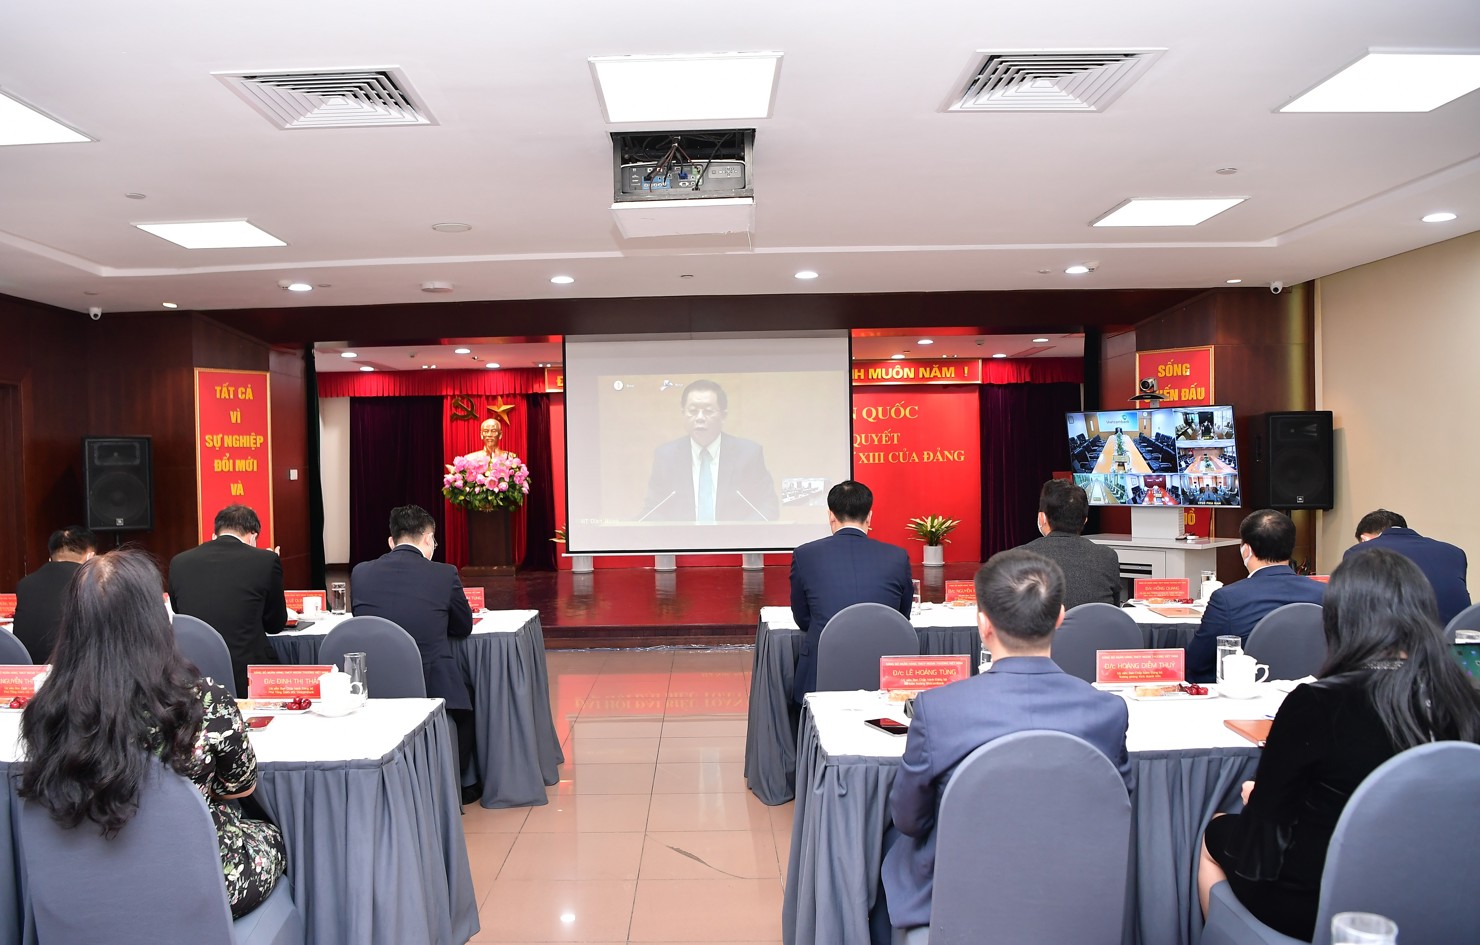 Đảng ủy Vietcombank tổ chức Hội nghị trực tuyến kết nối Hội nghị văn hóa toàn quốc triển khai thực hiện nghị quyết Đại hội XIII của Đảng.